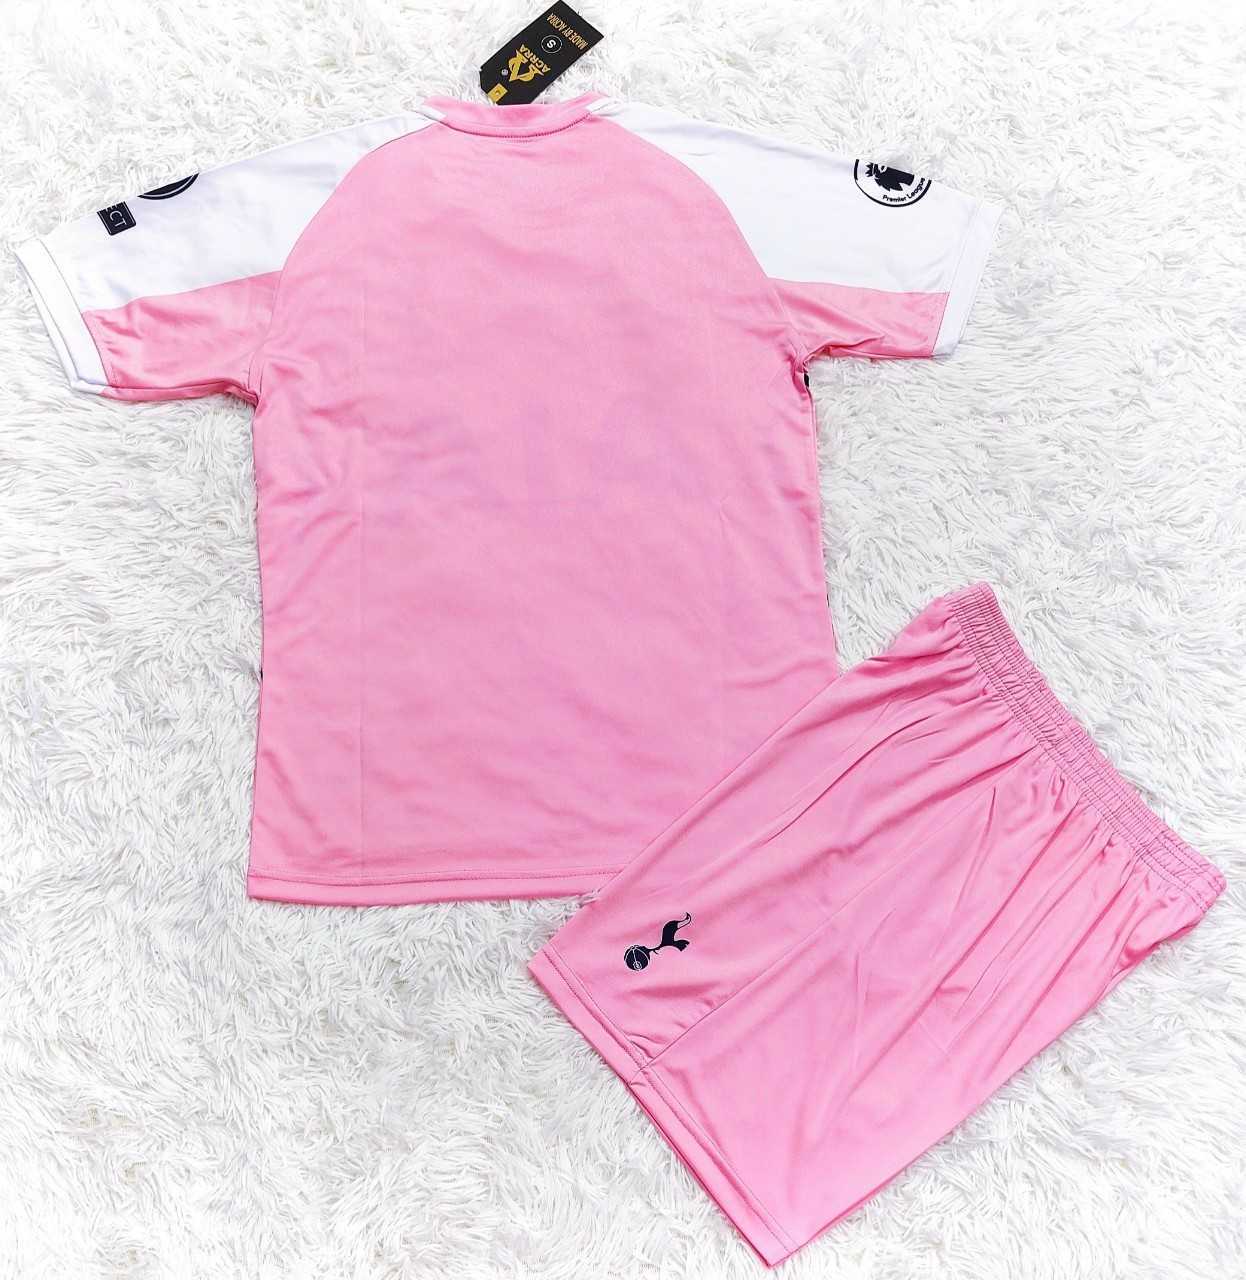 Bộ quần áo đá bóng câu lạc bộ tottenham aia hotspur màu hồng vải thun thái lạnh giá rẻ 2